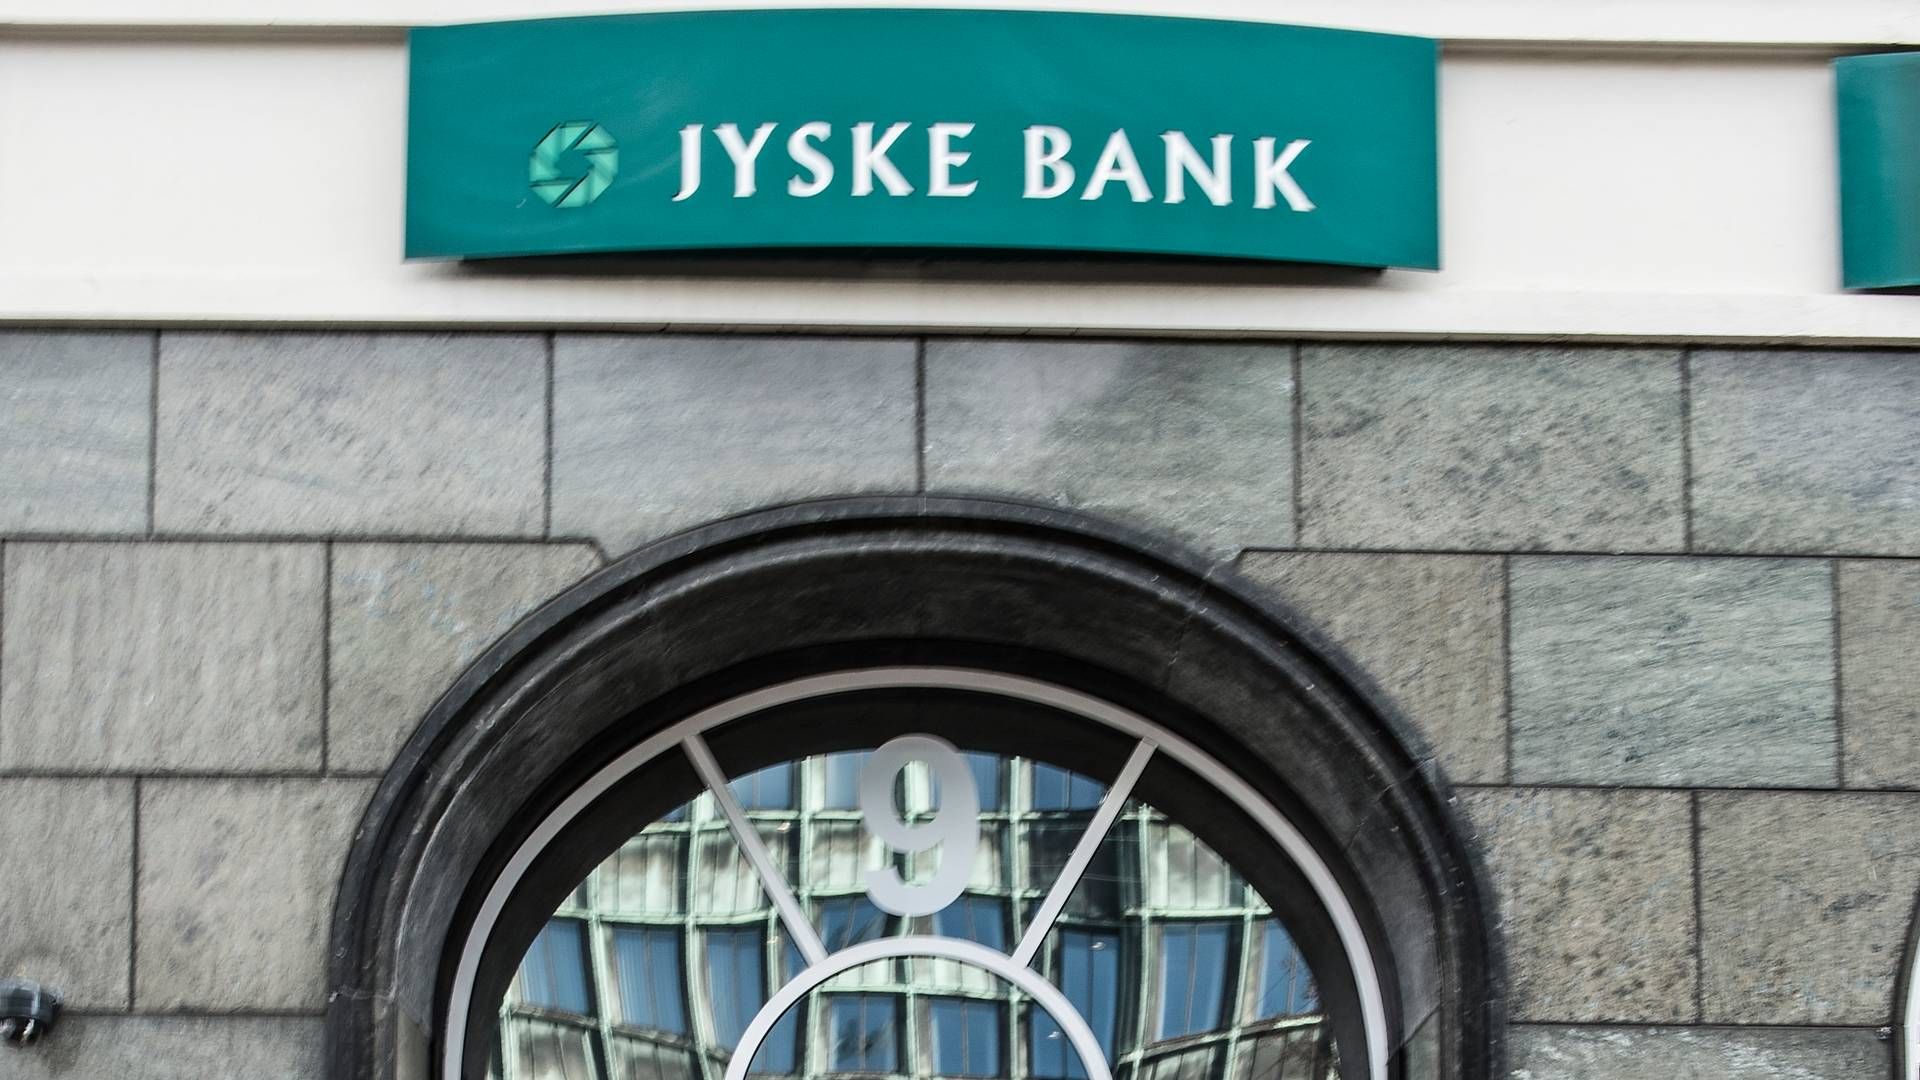 Jyske Bank og Handelsbanken har sammenlagt 123 filialer på landsplan, men det kommer væsentligt ned i løbet af 2023, fortæller Lars Mørch, direktør for forretningsstrategi i Jyske Bank. | Foto: Jonas Olufson